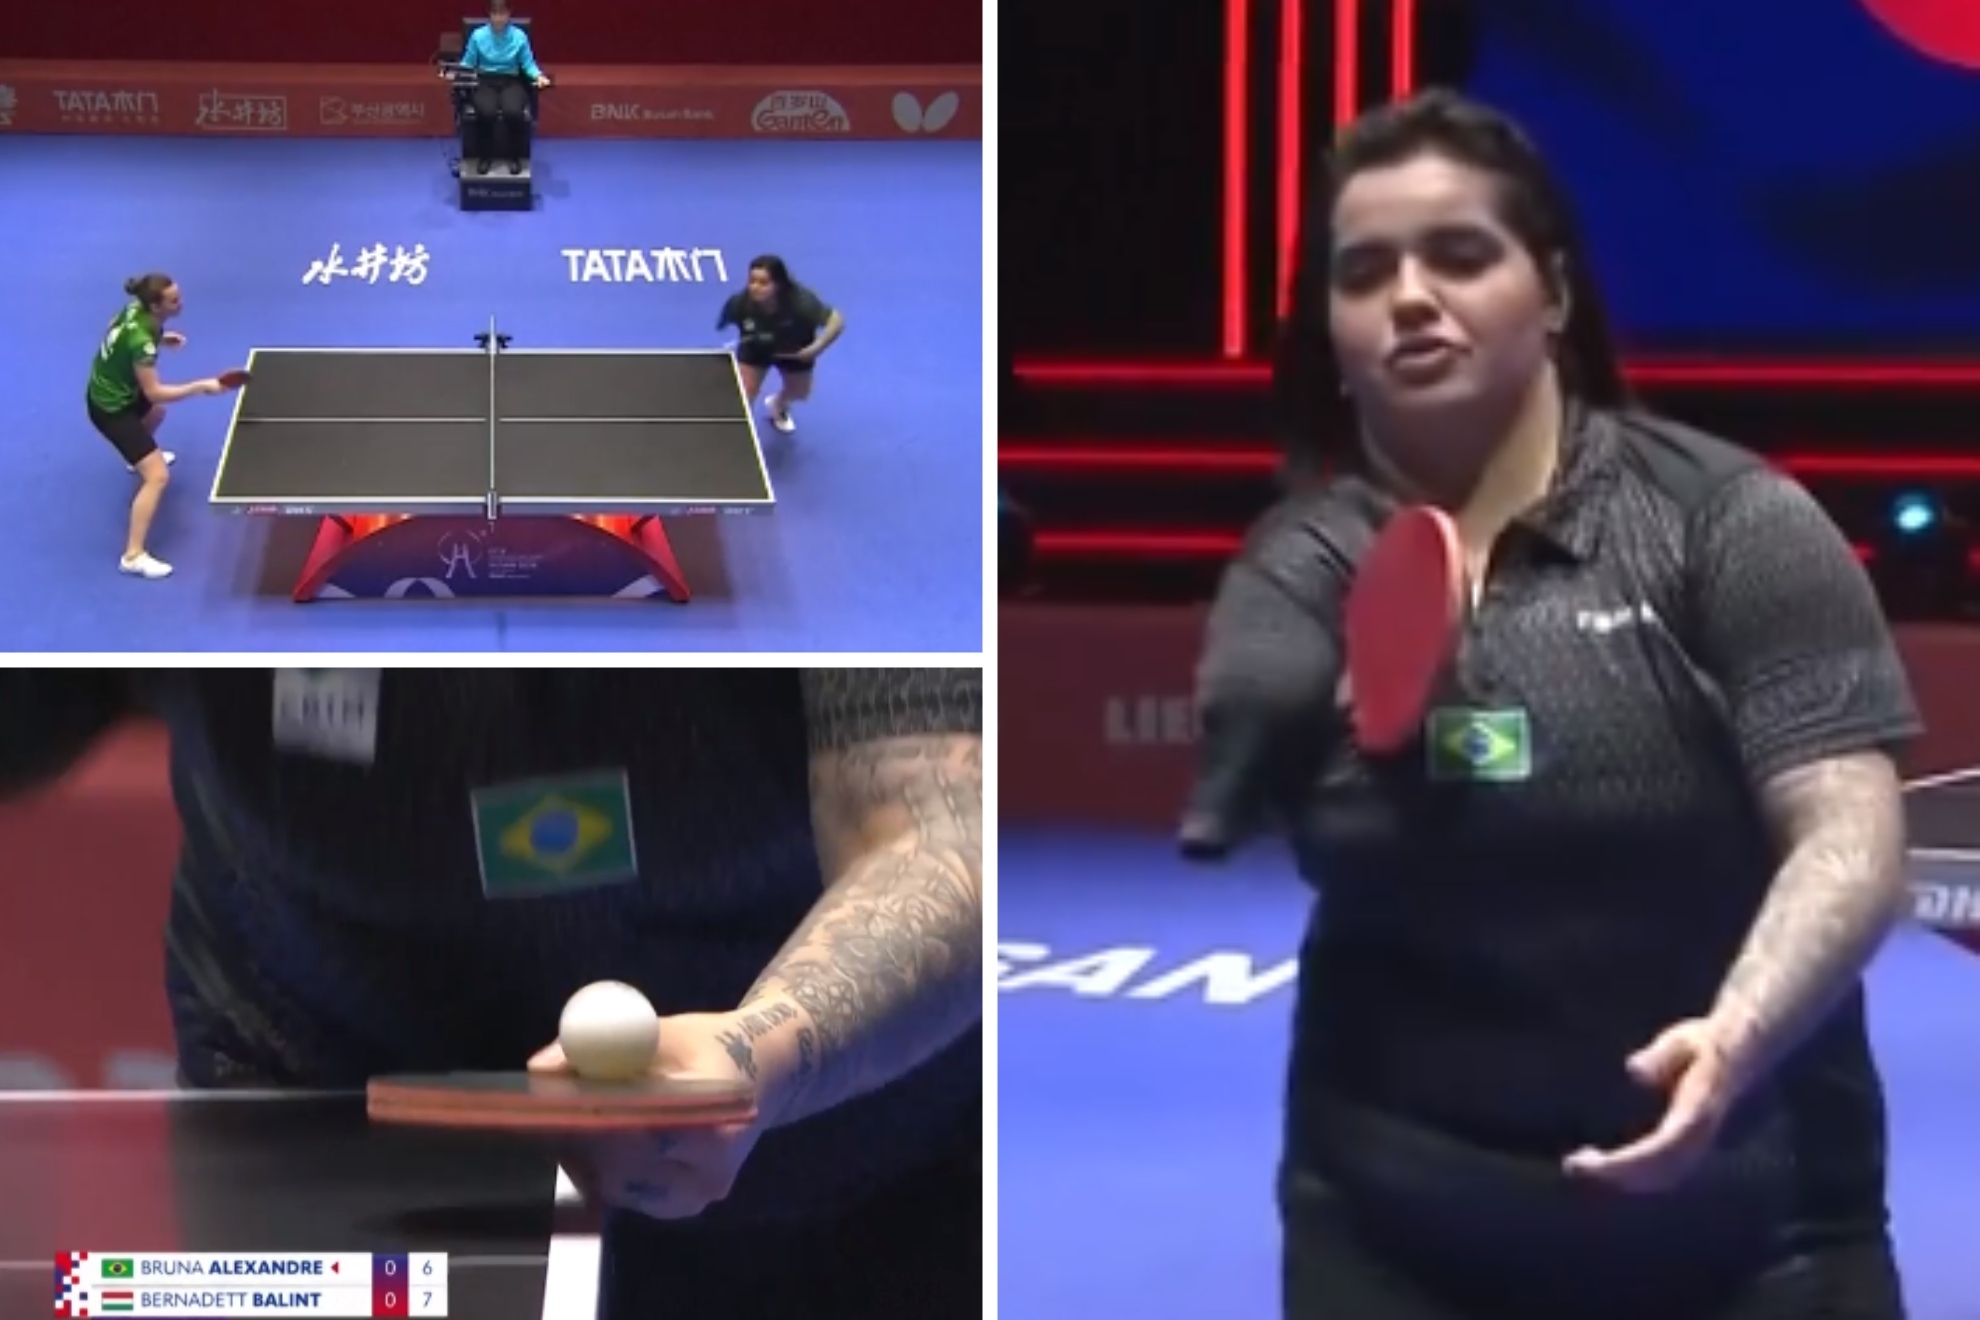 Bruna Alexandre hace historia del tenis de mesa jugando (¡y ganando!) en un mundial absoluto con un solo brazo